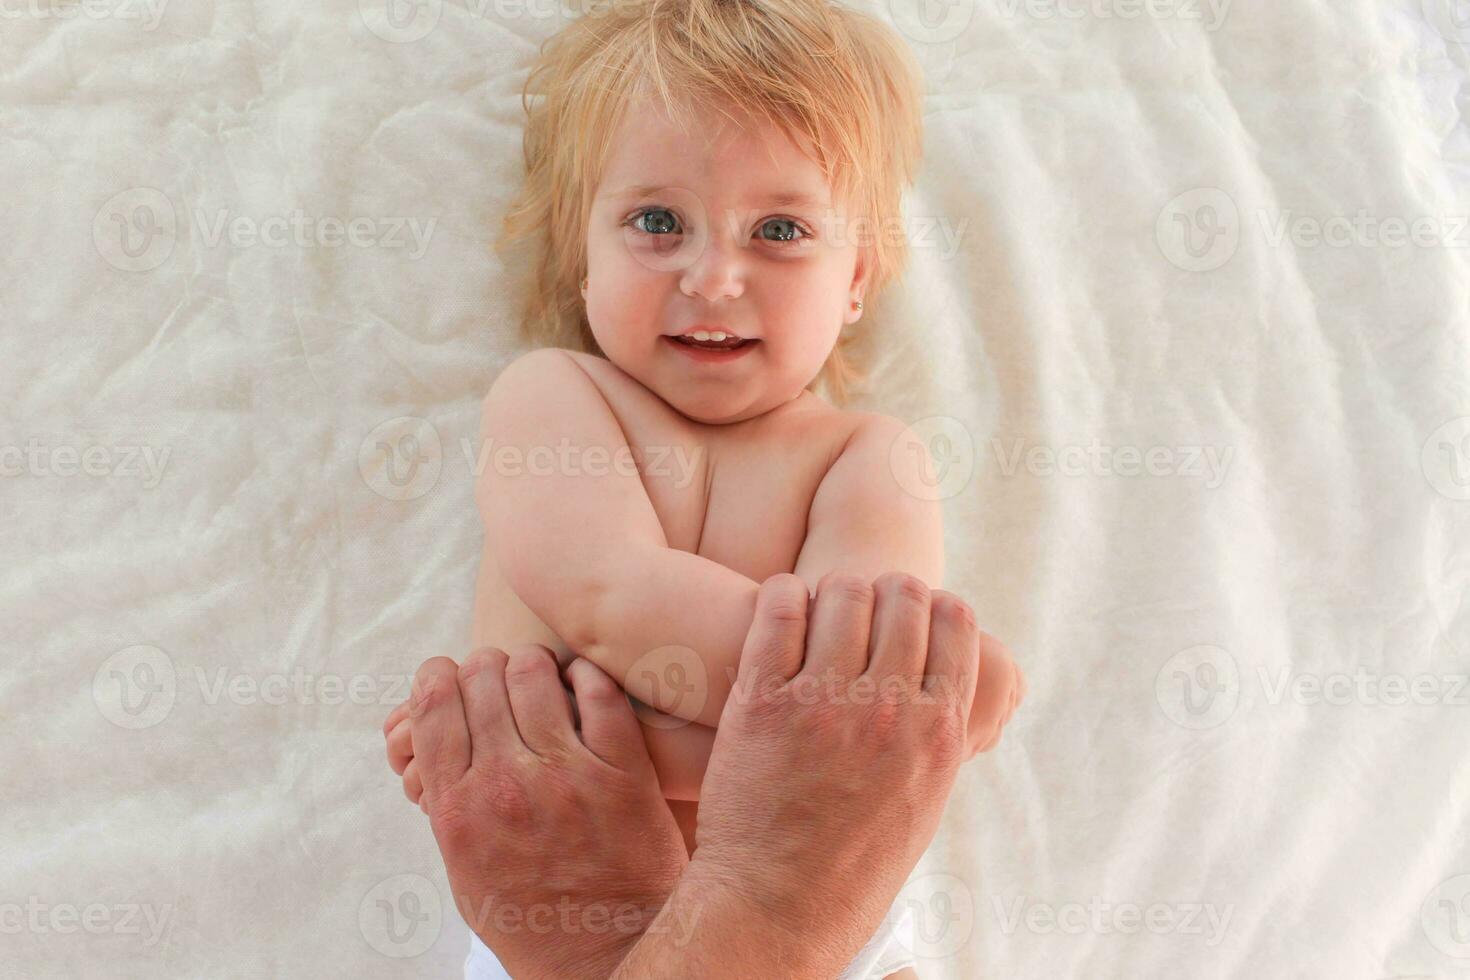 massagista fazendo exercício para mãos pequeno bebê foto